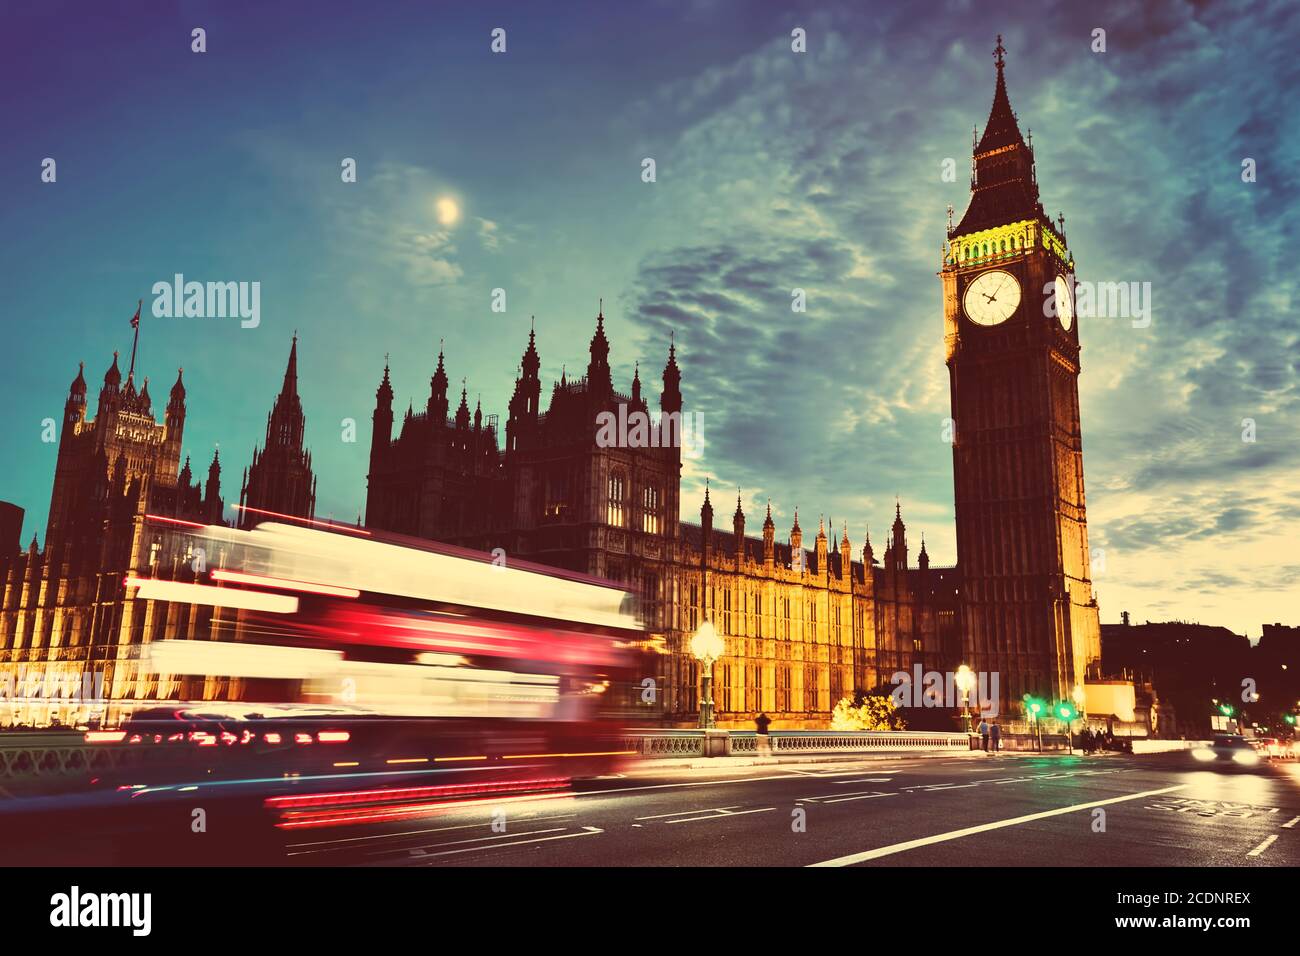 Bus rouge, Big Ben et Westminster Palace à Londres, Royaume-Uni. La nuit. La lune brille. Vintage Banque D'Images